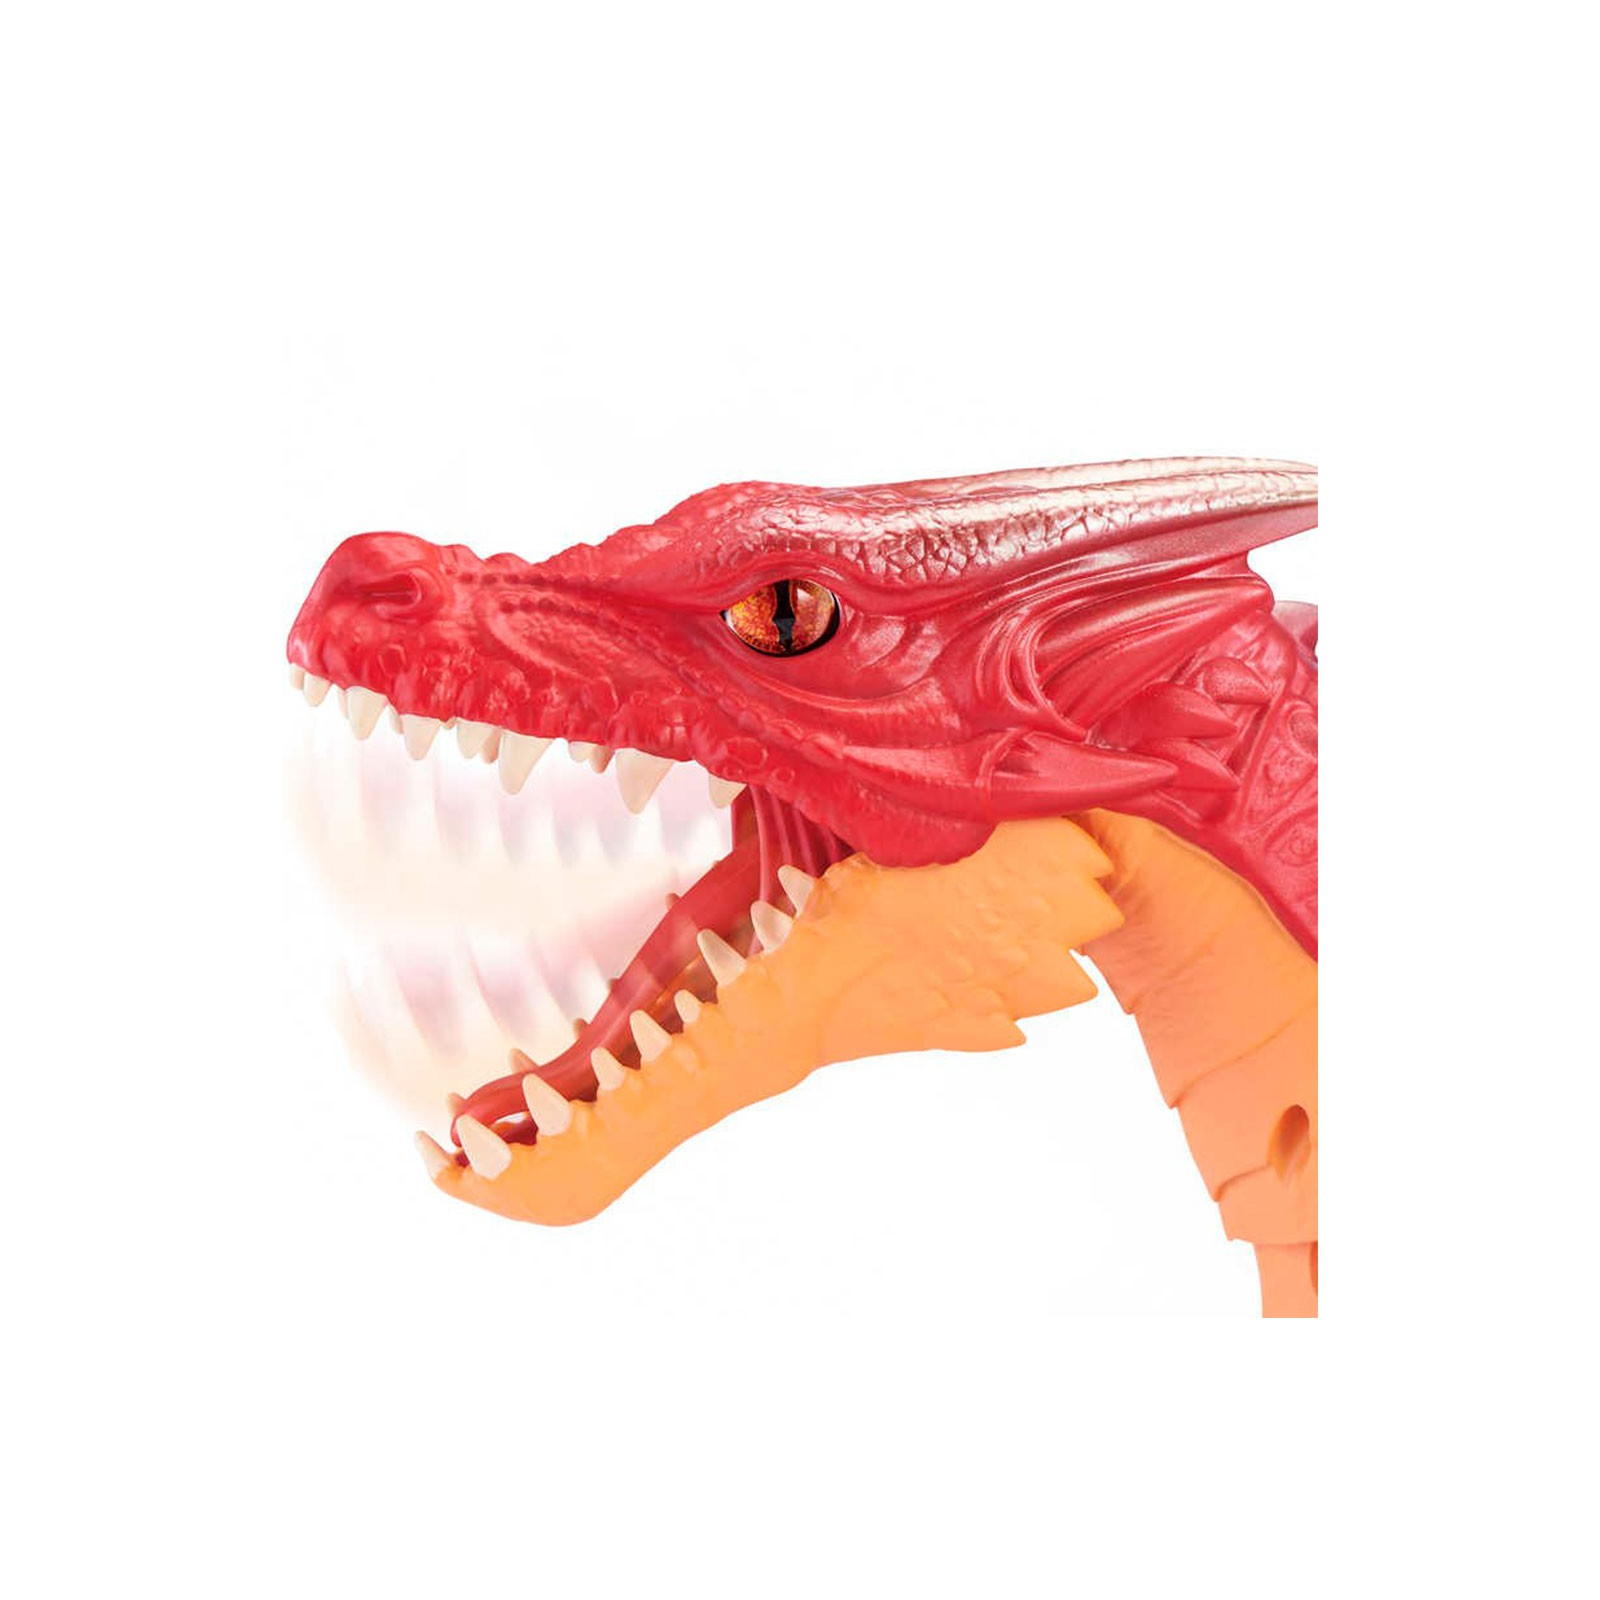 Интерактивная игрушка Pets & Robo Alive Robo Alive - Огненный дракон (7115R) изображение 3